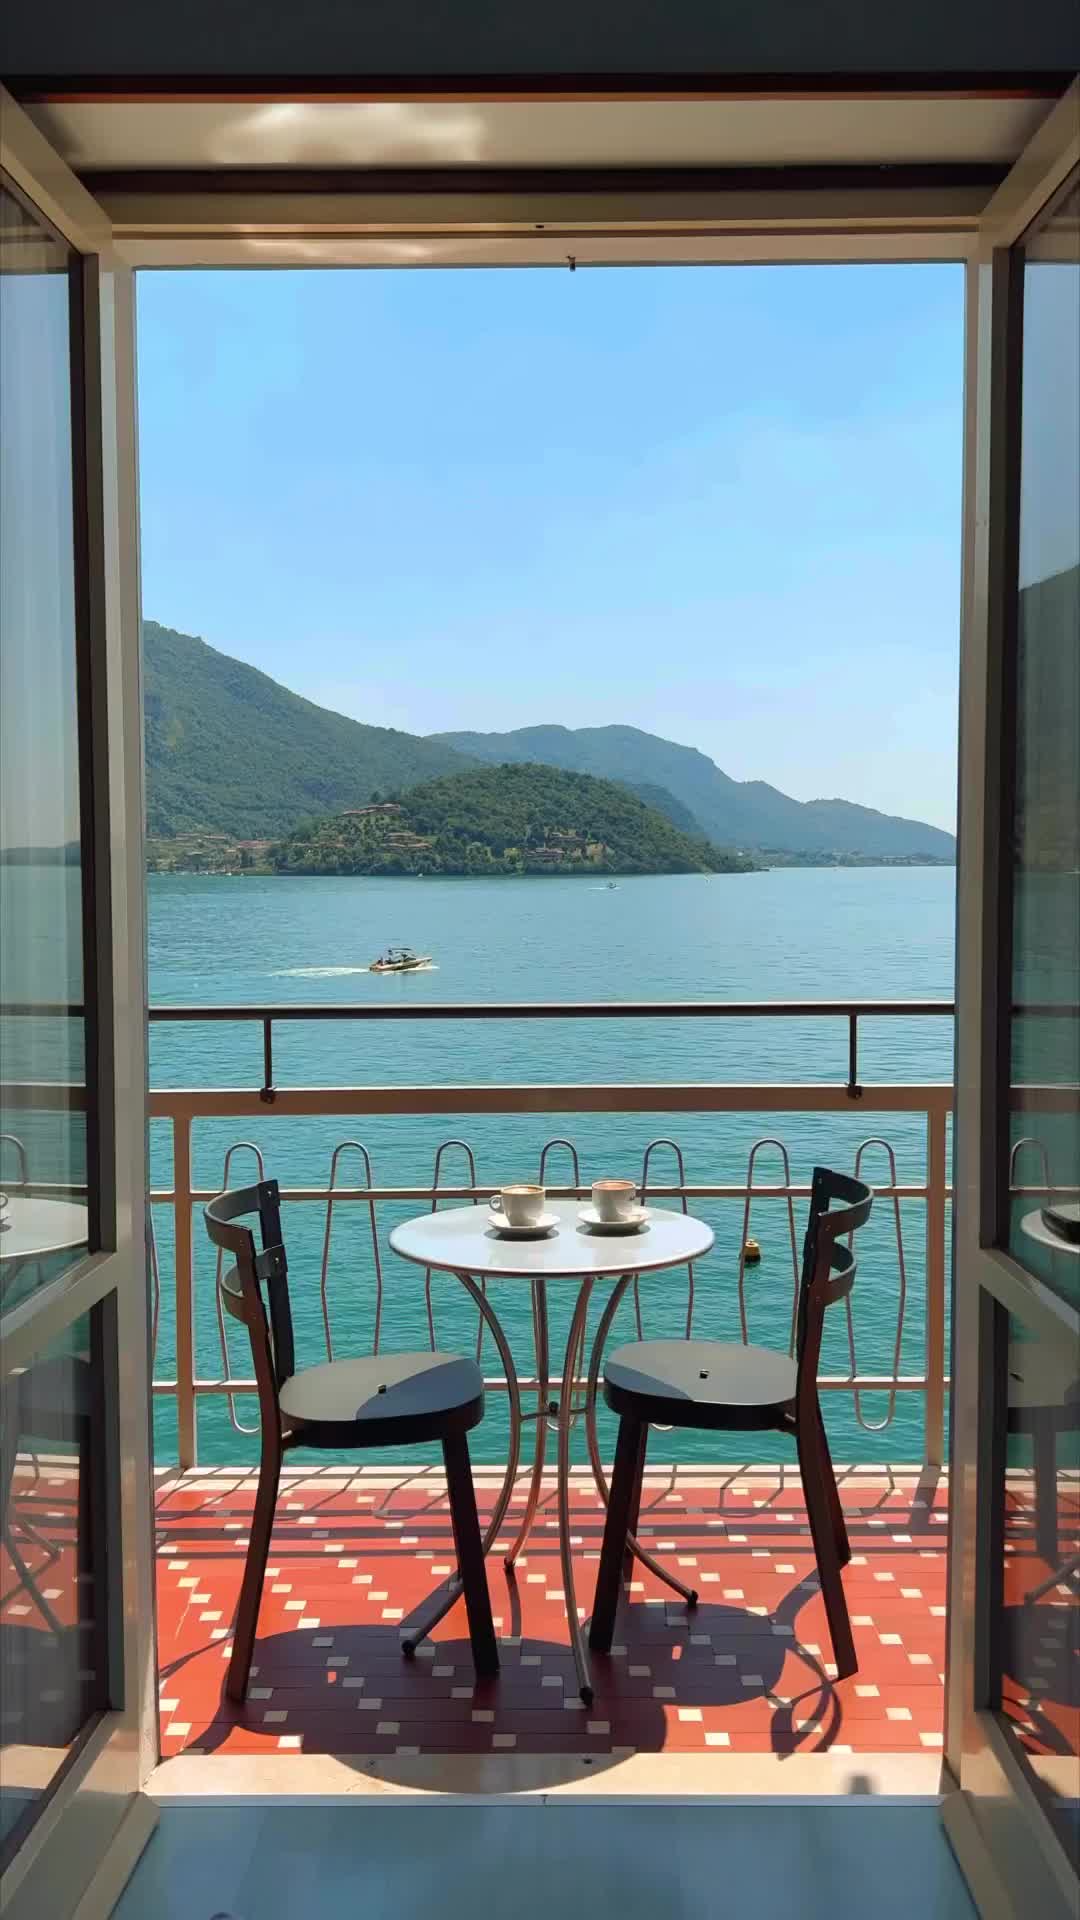 Mornings at Lake Iseo - Tranquil Italian Views 🌊☕️